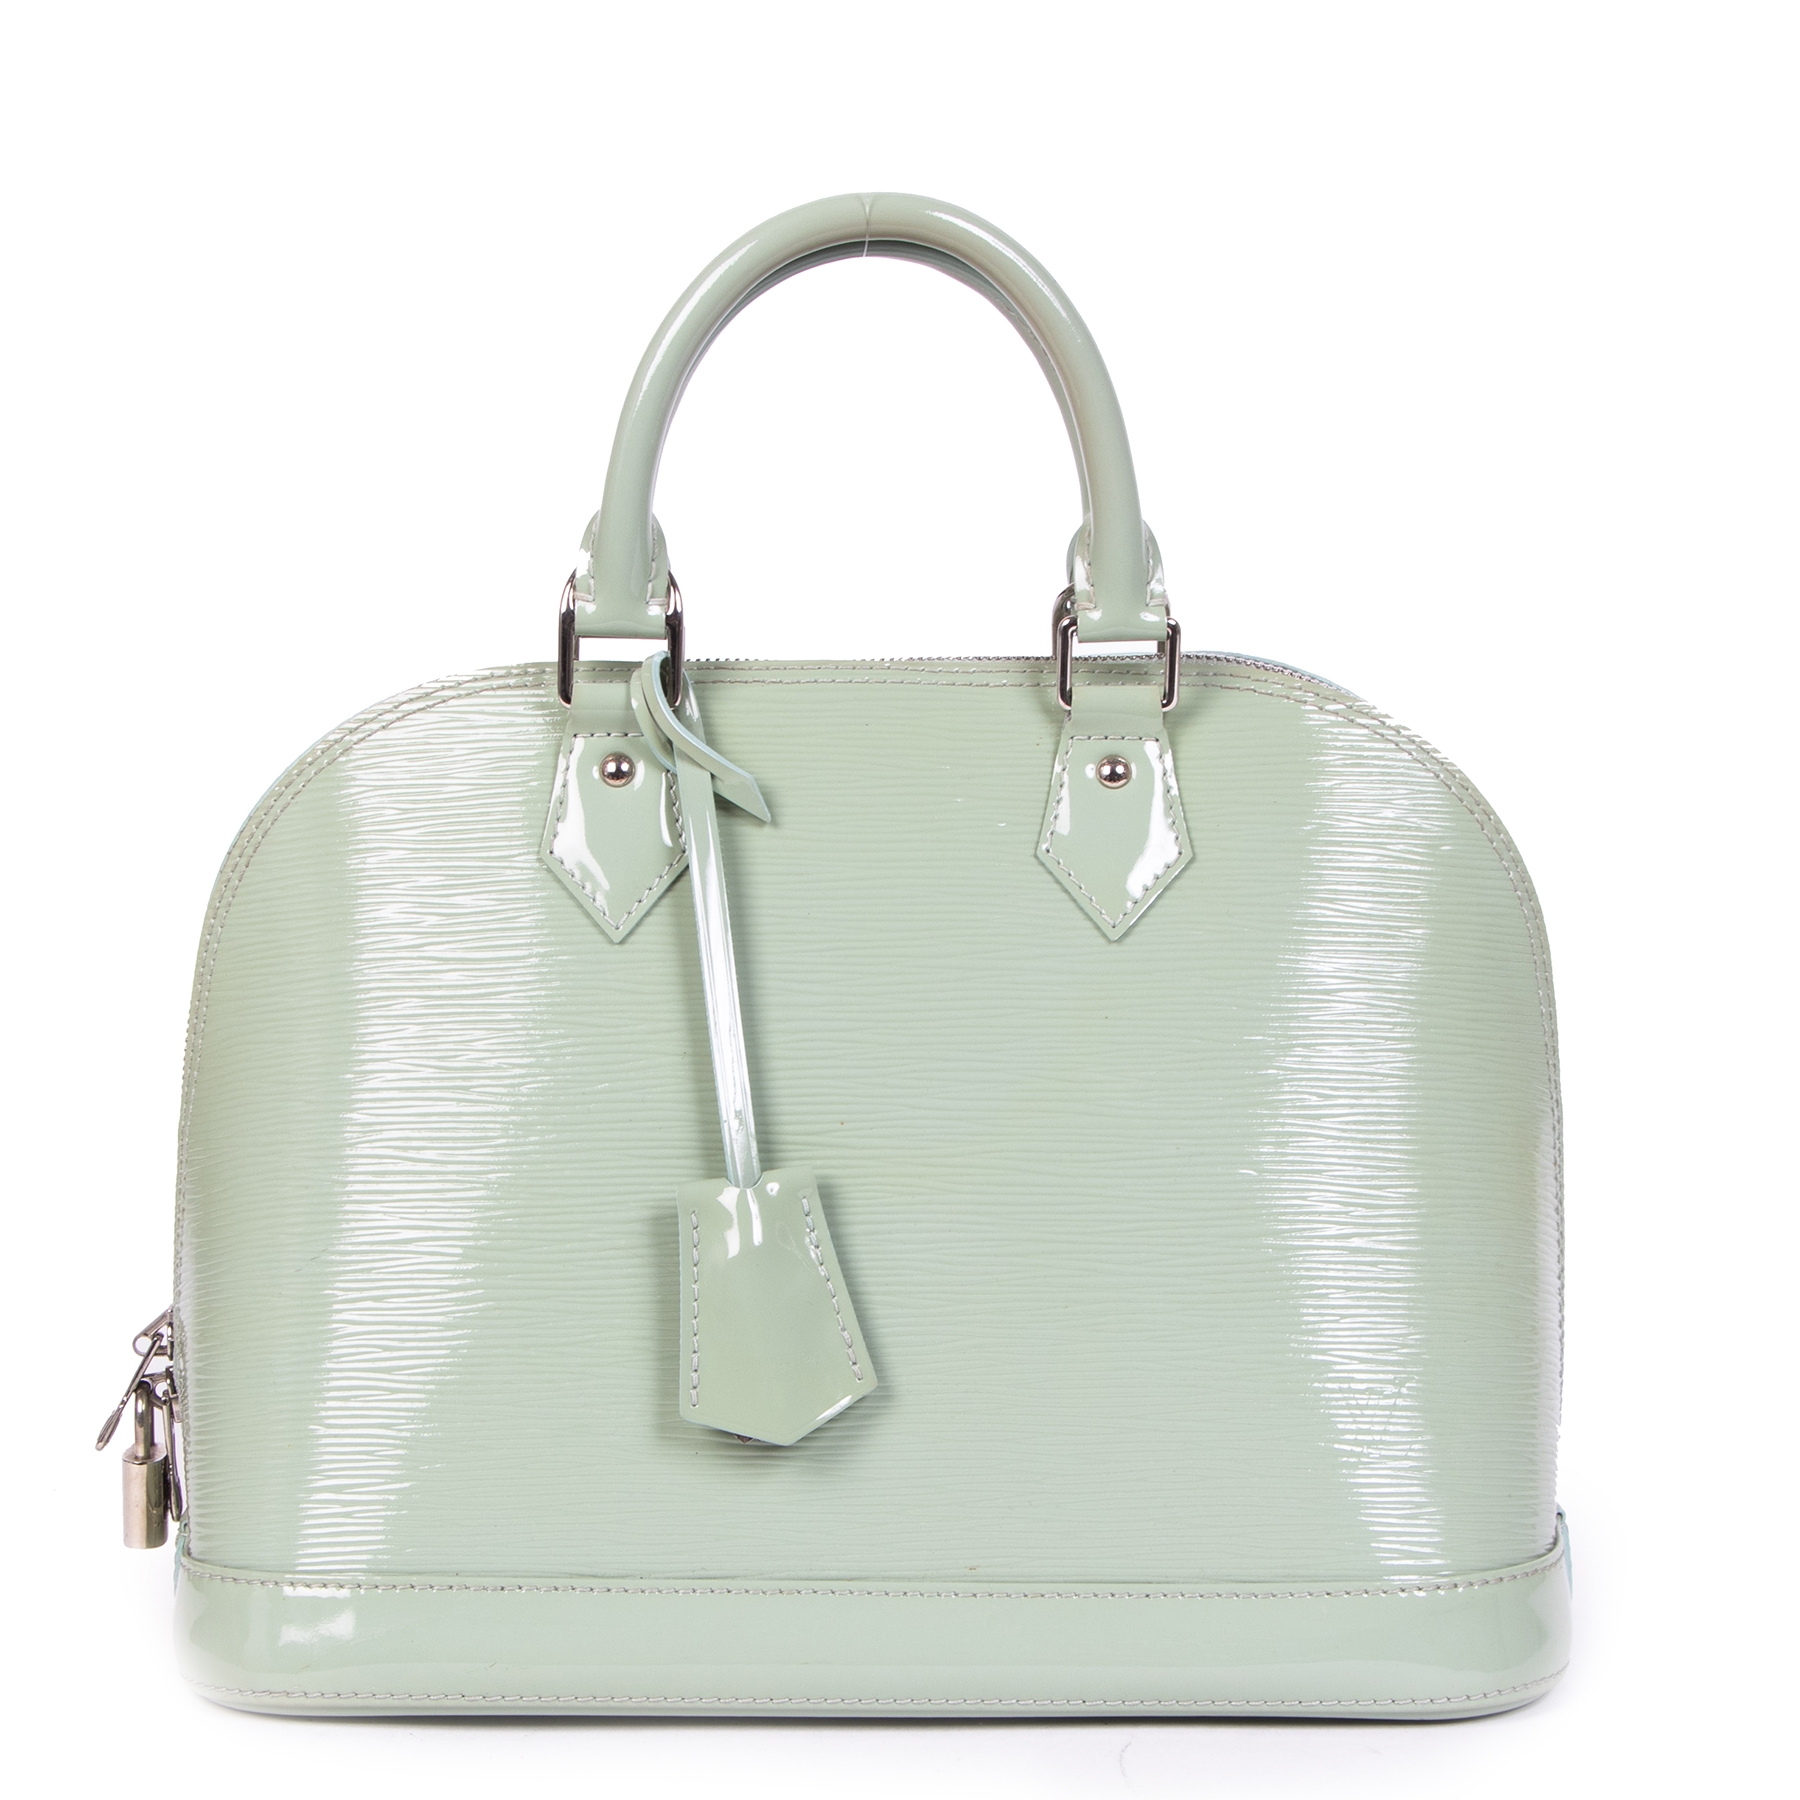 Louis Vuitton Alma EPI Handbag,Green